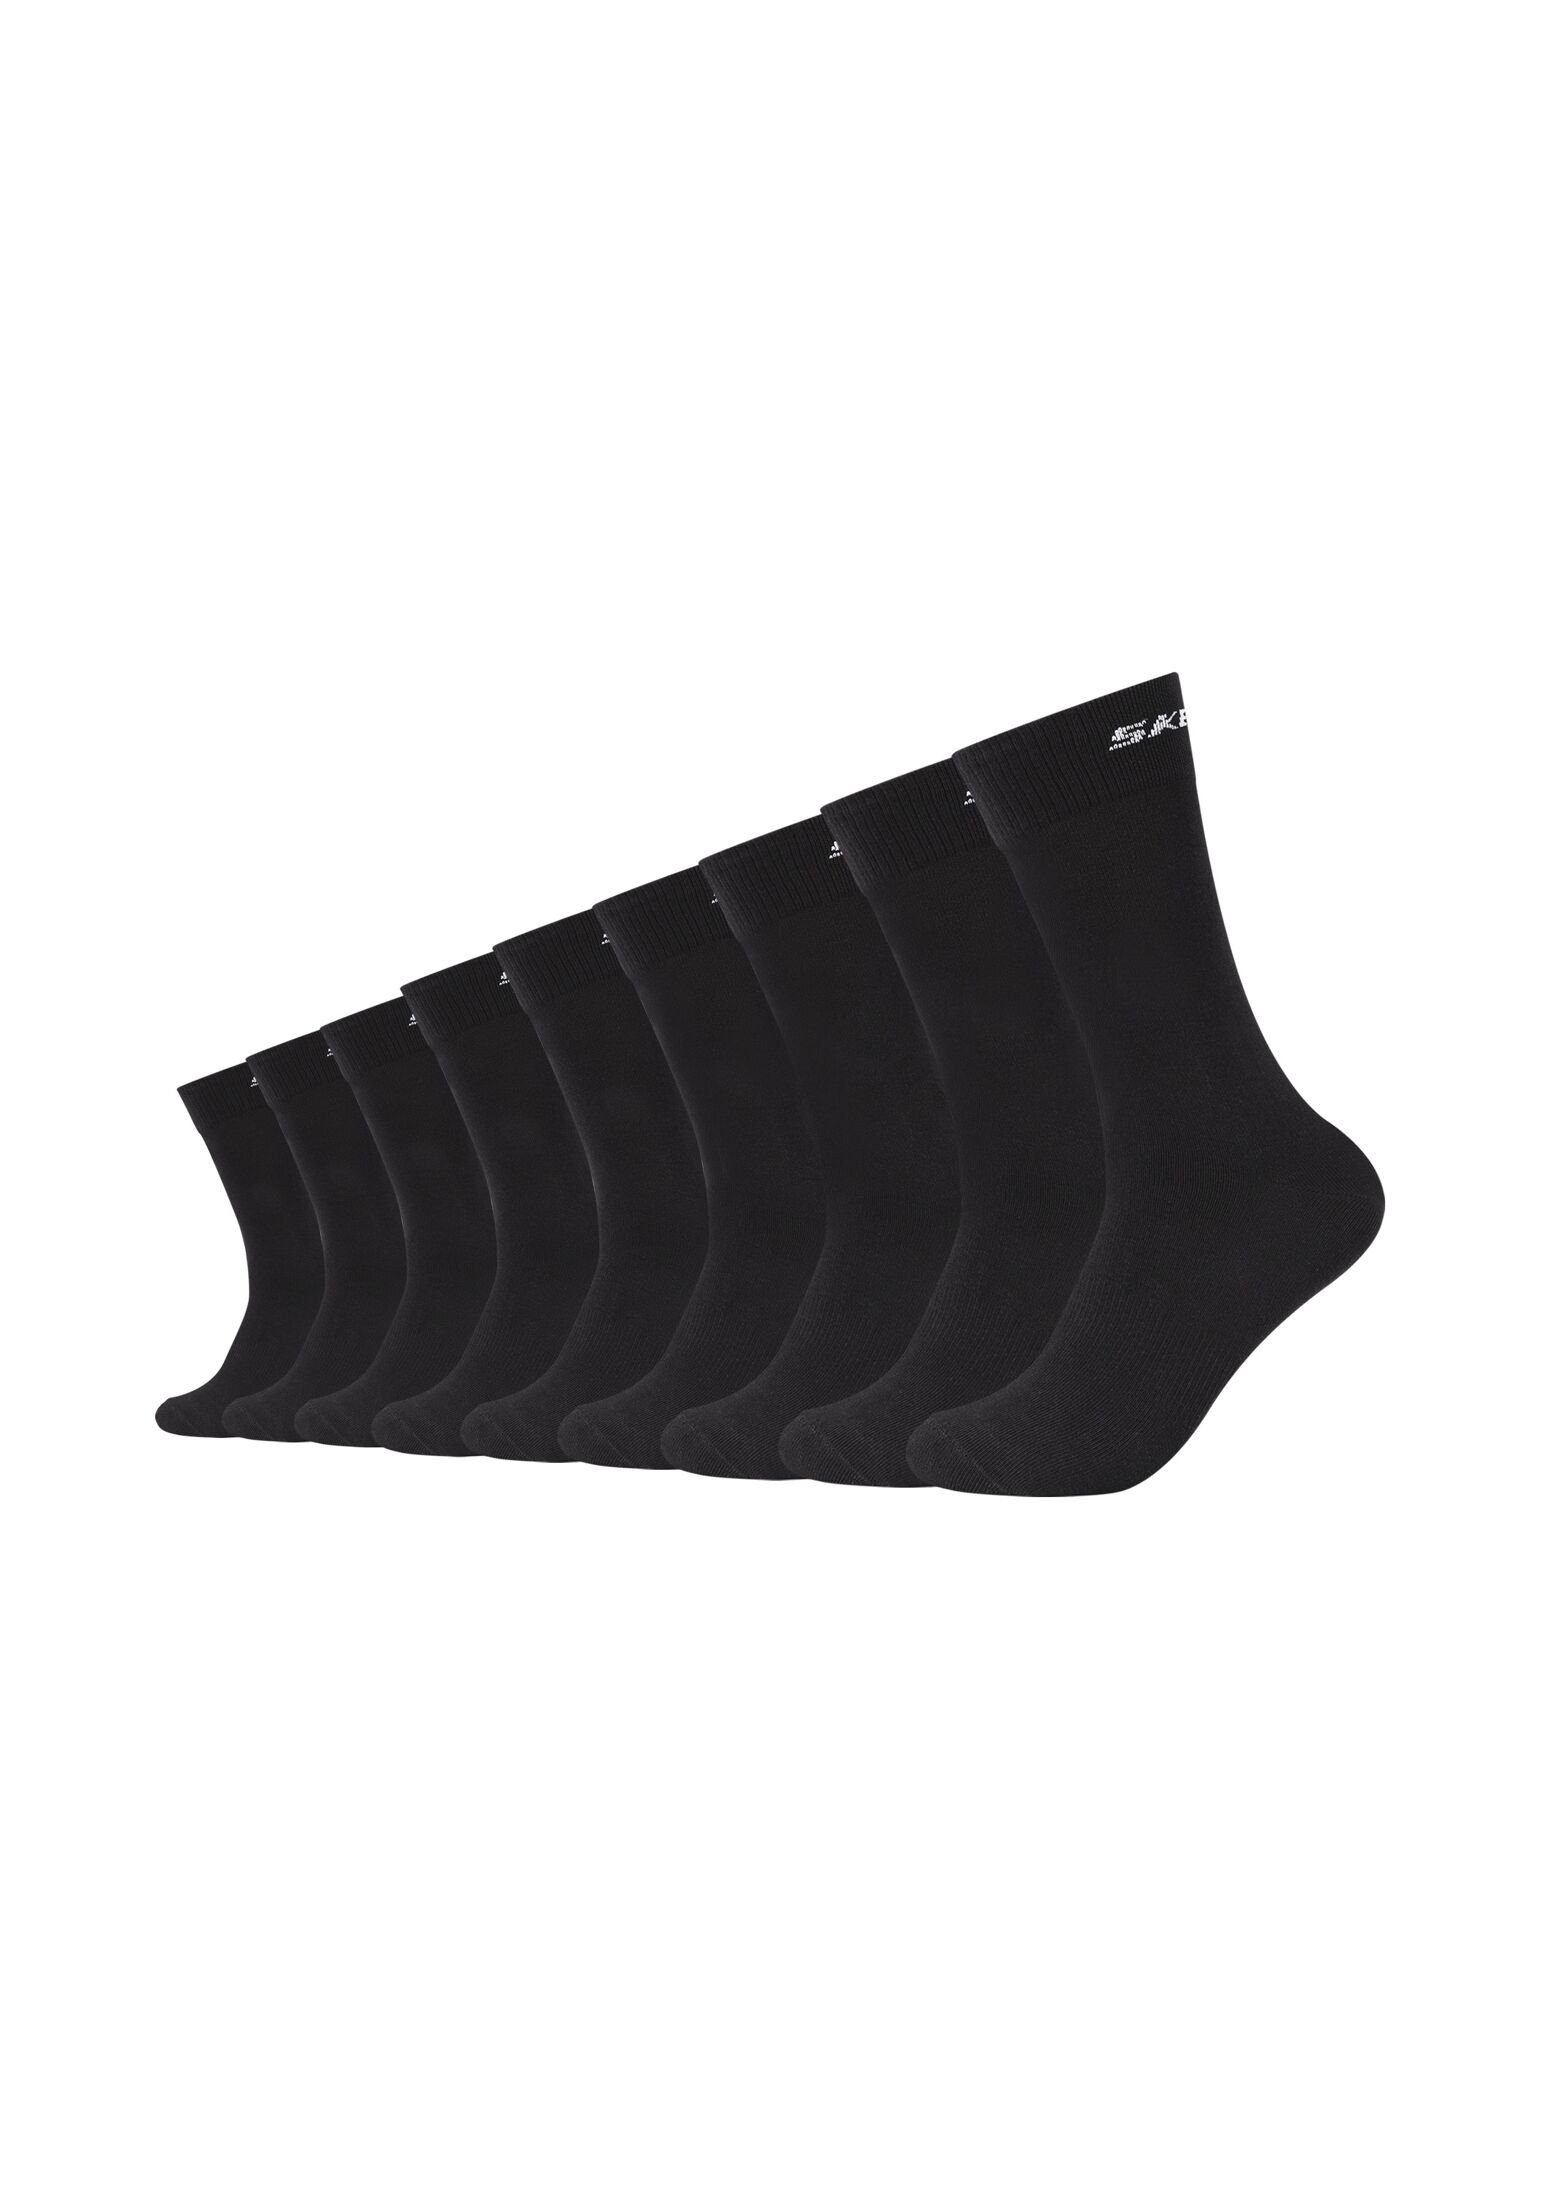 Skechers Socken Socken 9er Pack black